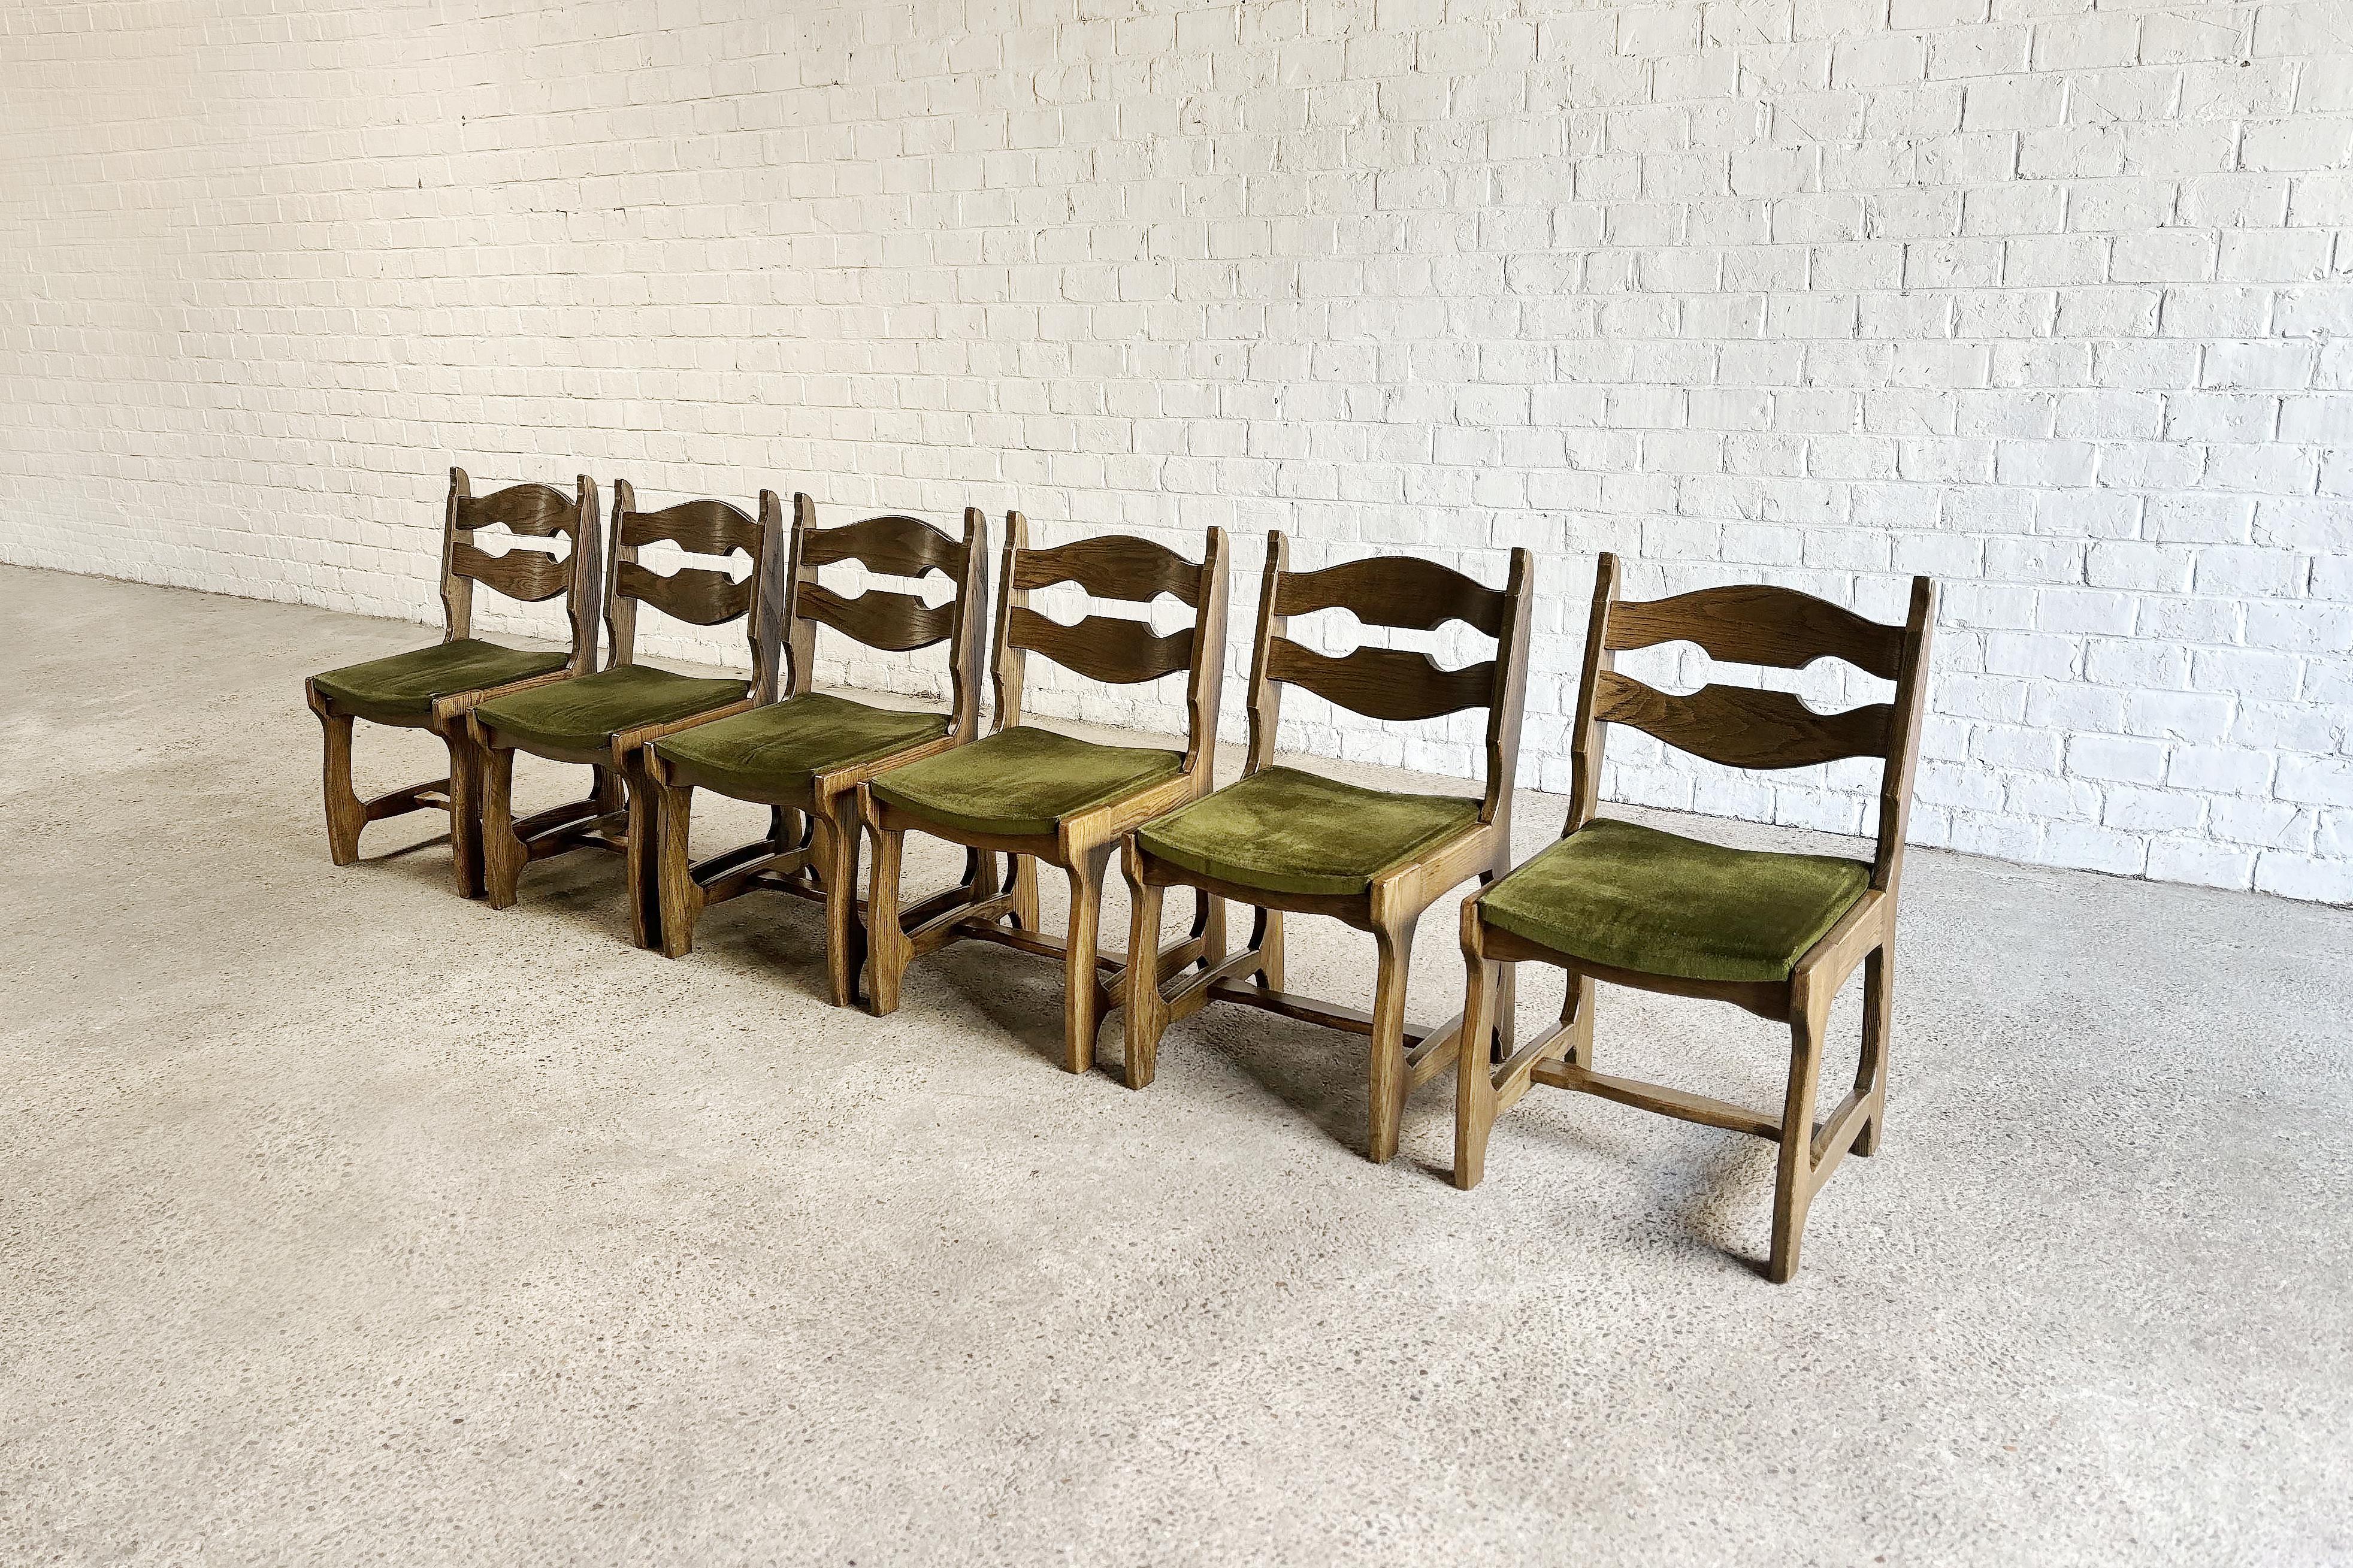 Wunderschöner und ungewöhnlicher Satz von 6 massiven Eichenstühlen, entworfen von Guillerme und Chambron für Votre Maison, um 1950. Originale grüne Samtsitze. Diese Stühle vermitteln einen brutalistischen und zugleich organischen Look.
